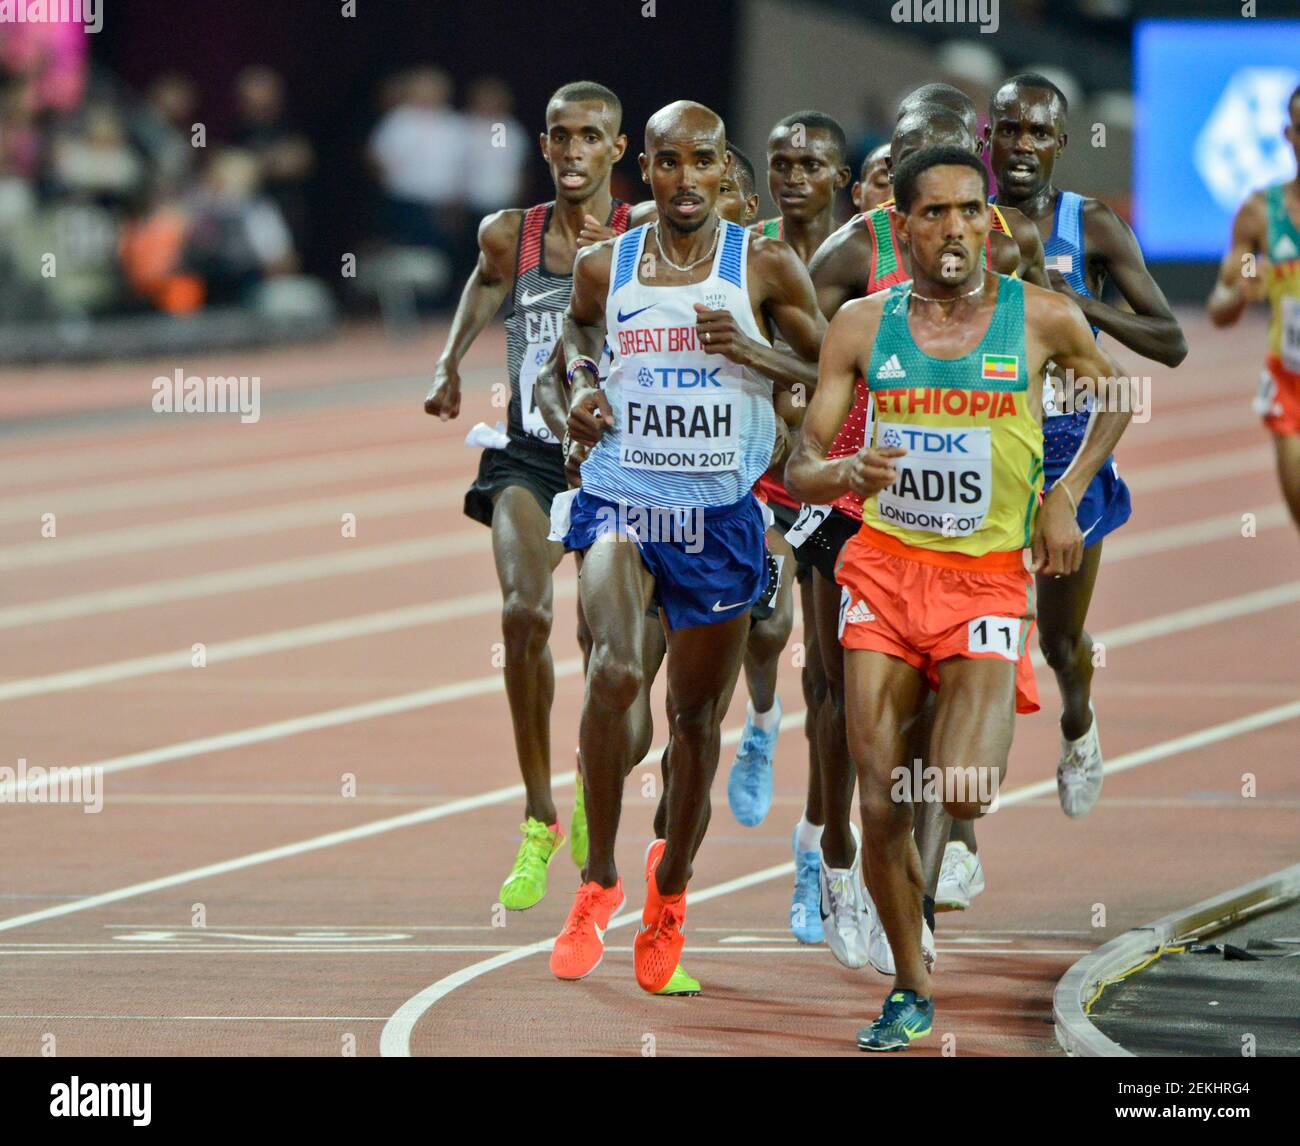 Abadi Hadis (Etiopía), Mo Farah (Gran Bretaña, Medalla de Oro). 10000 metros hombres - Campeonato Mundial de la IAAF Londres 2017 Foto de stock